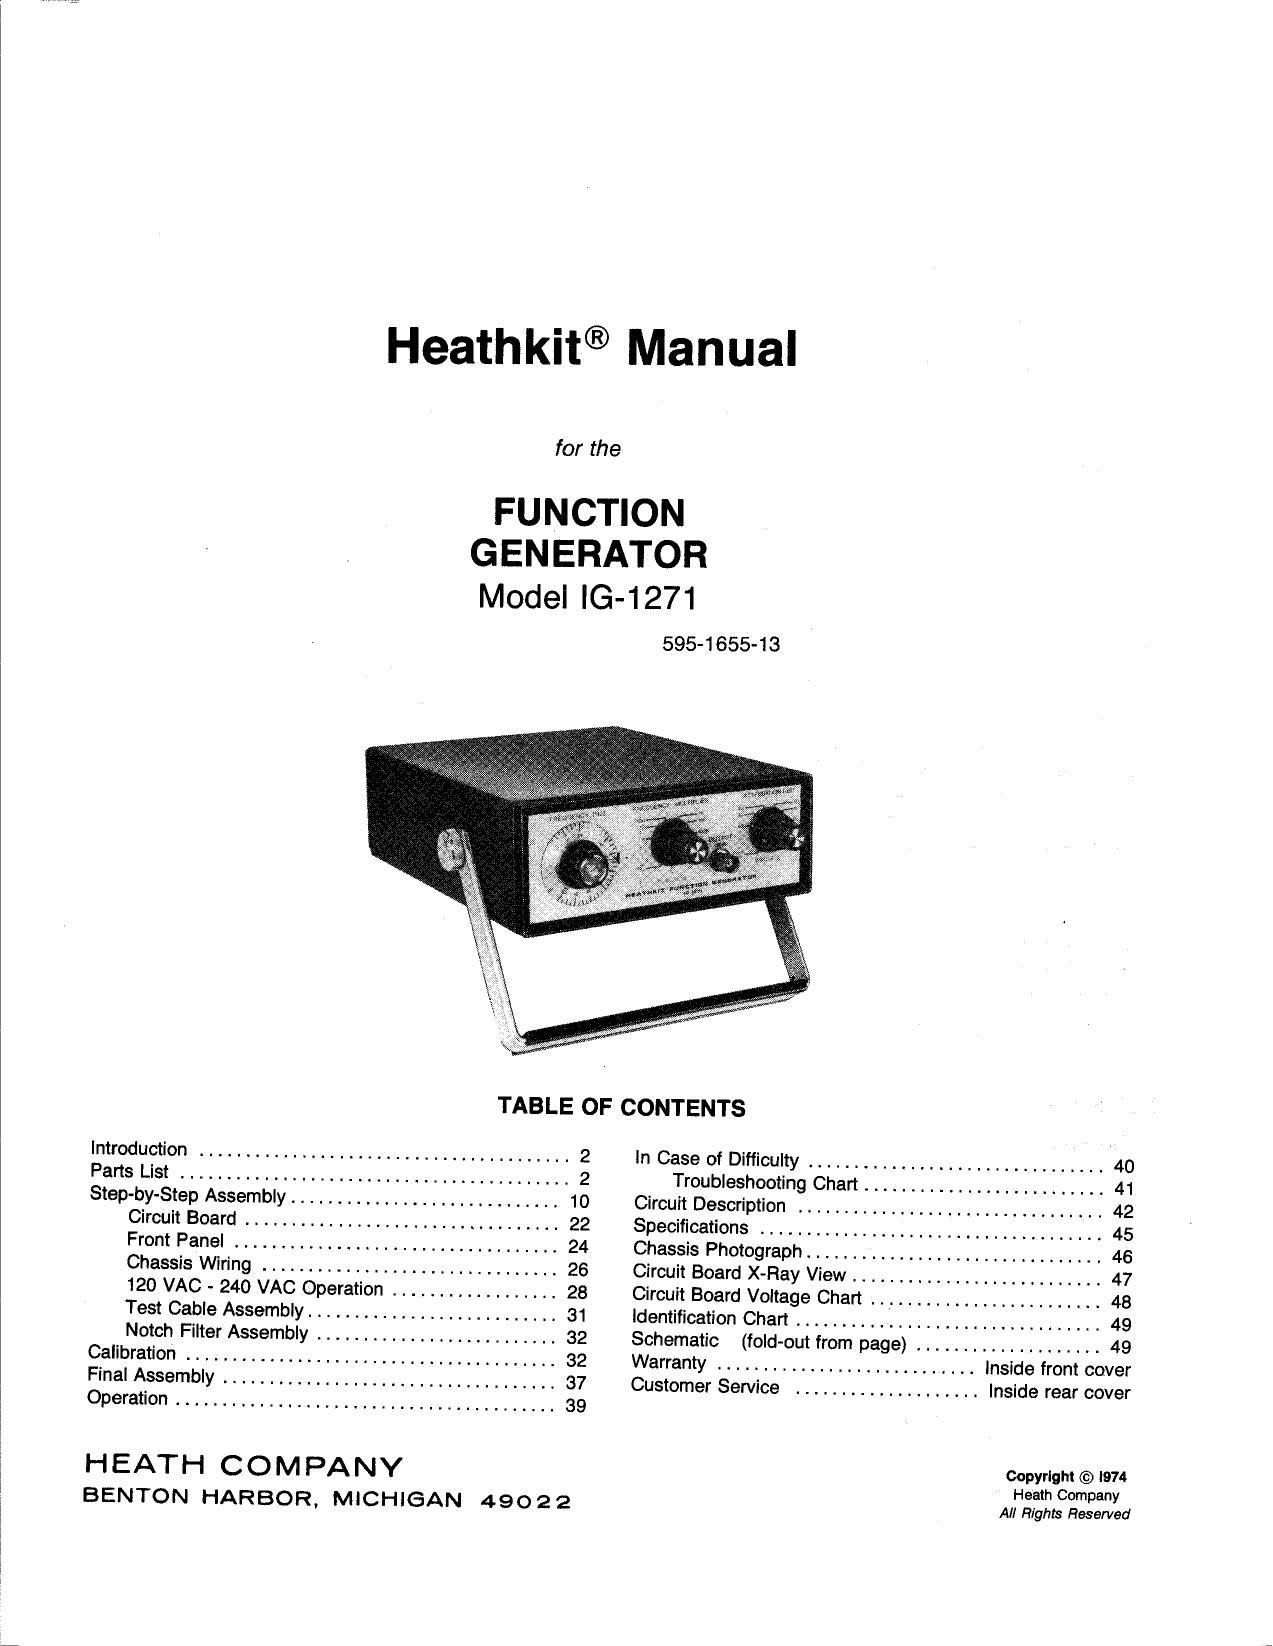 Heathkit IG 1271 Manual